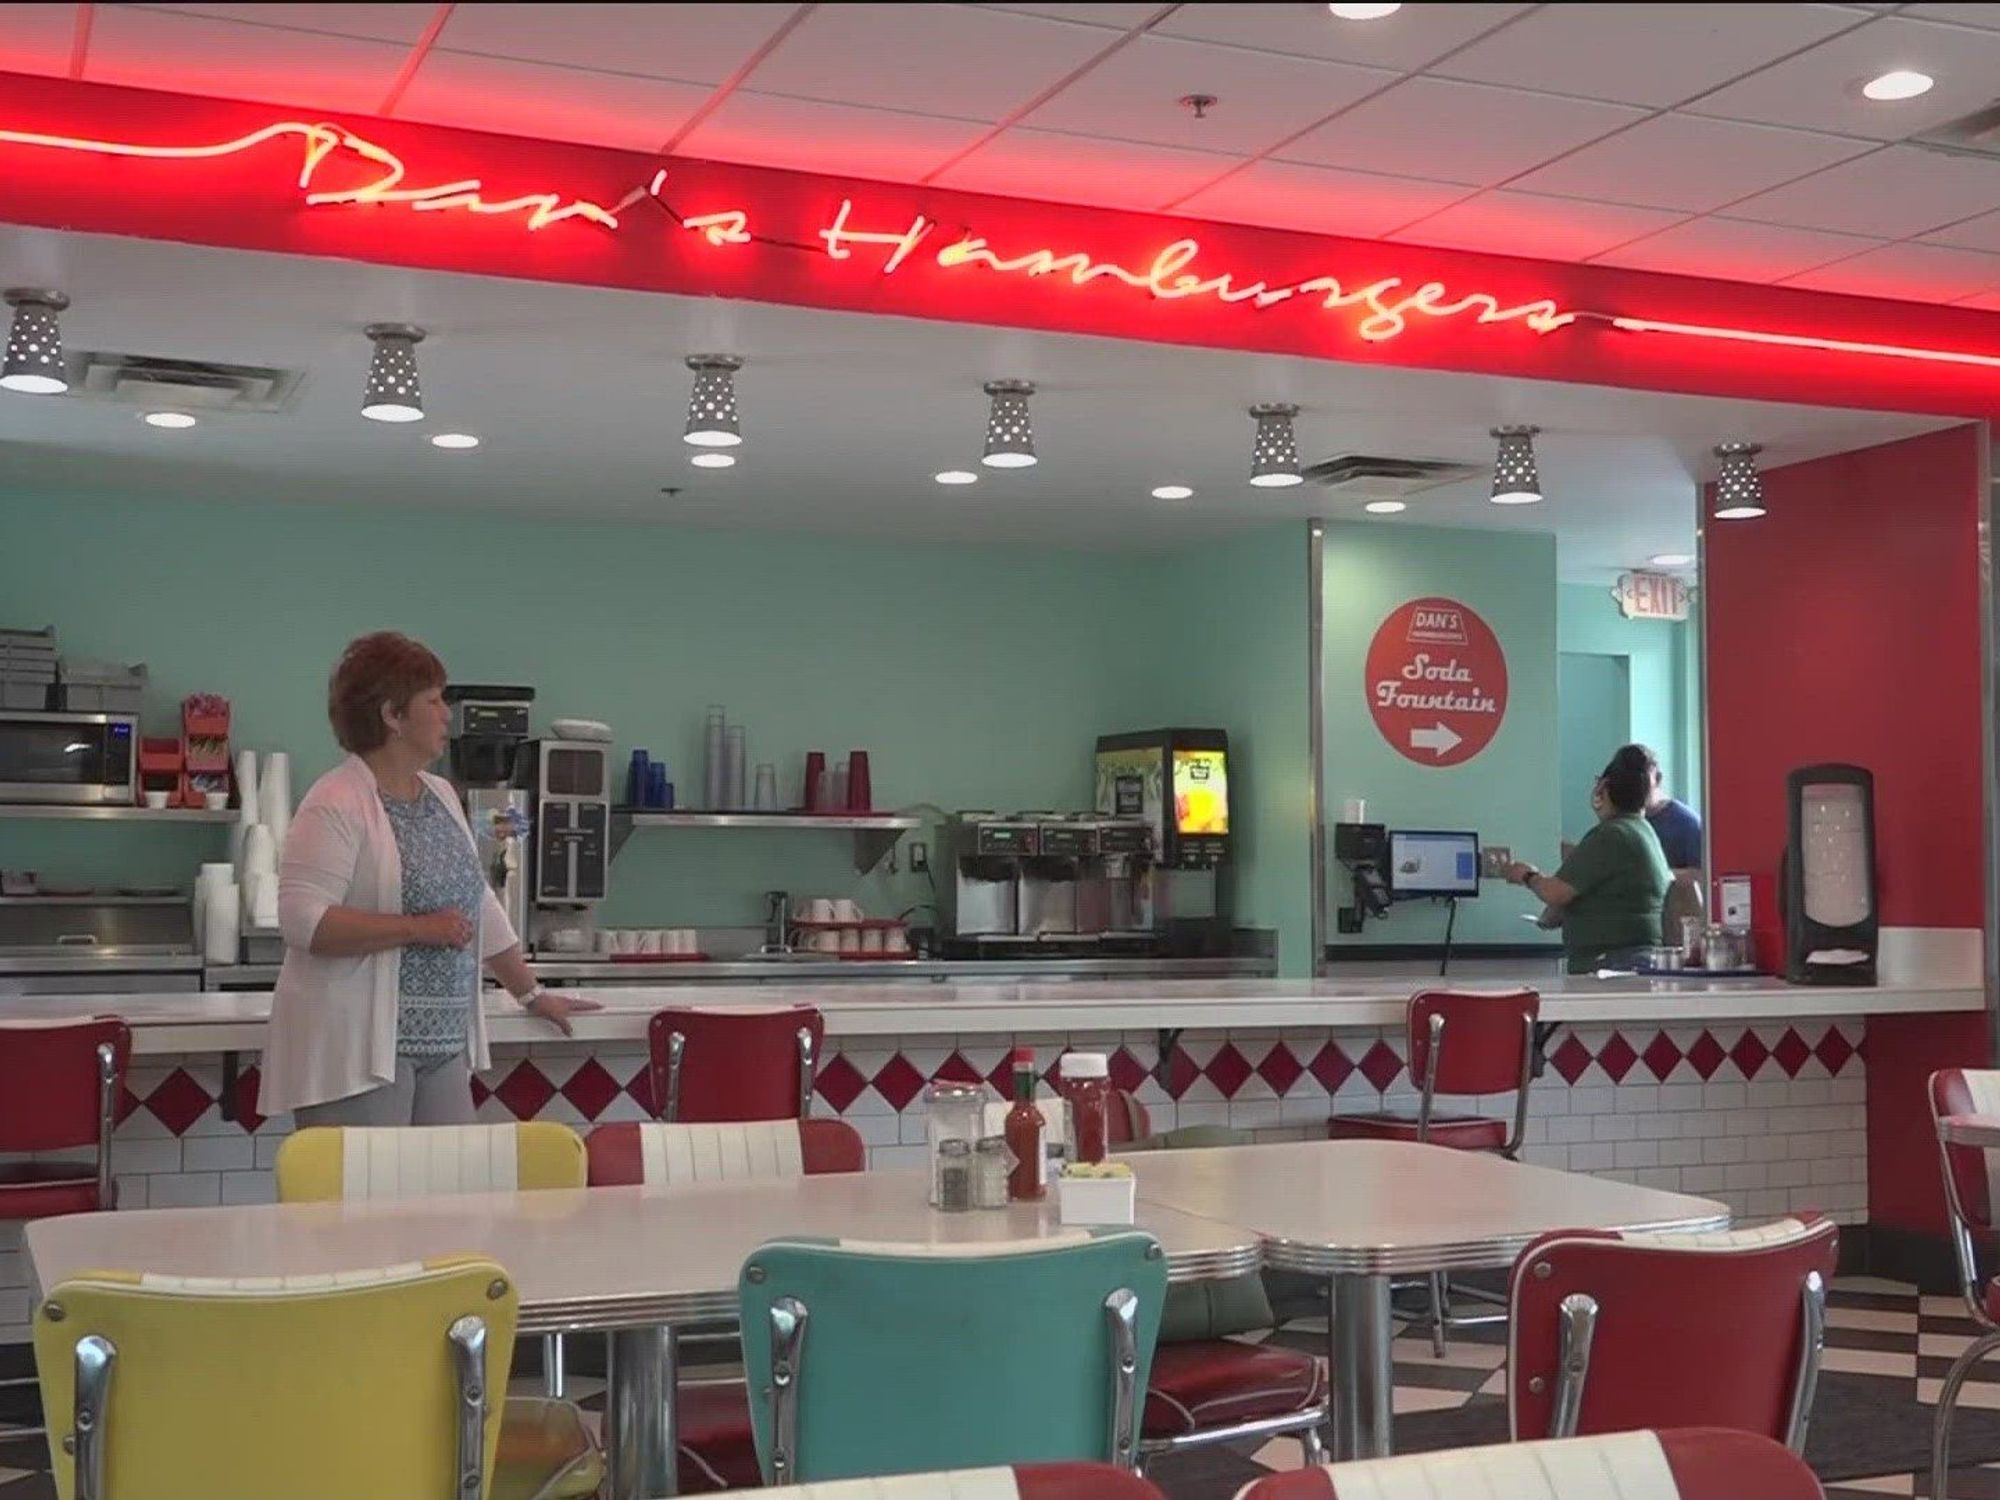 Dan's Hamburgers interior